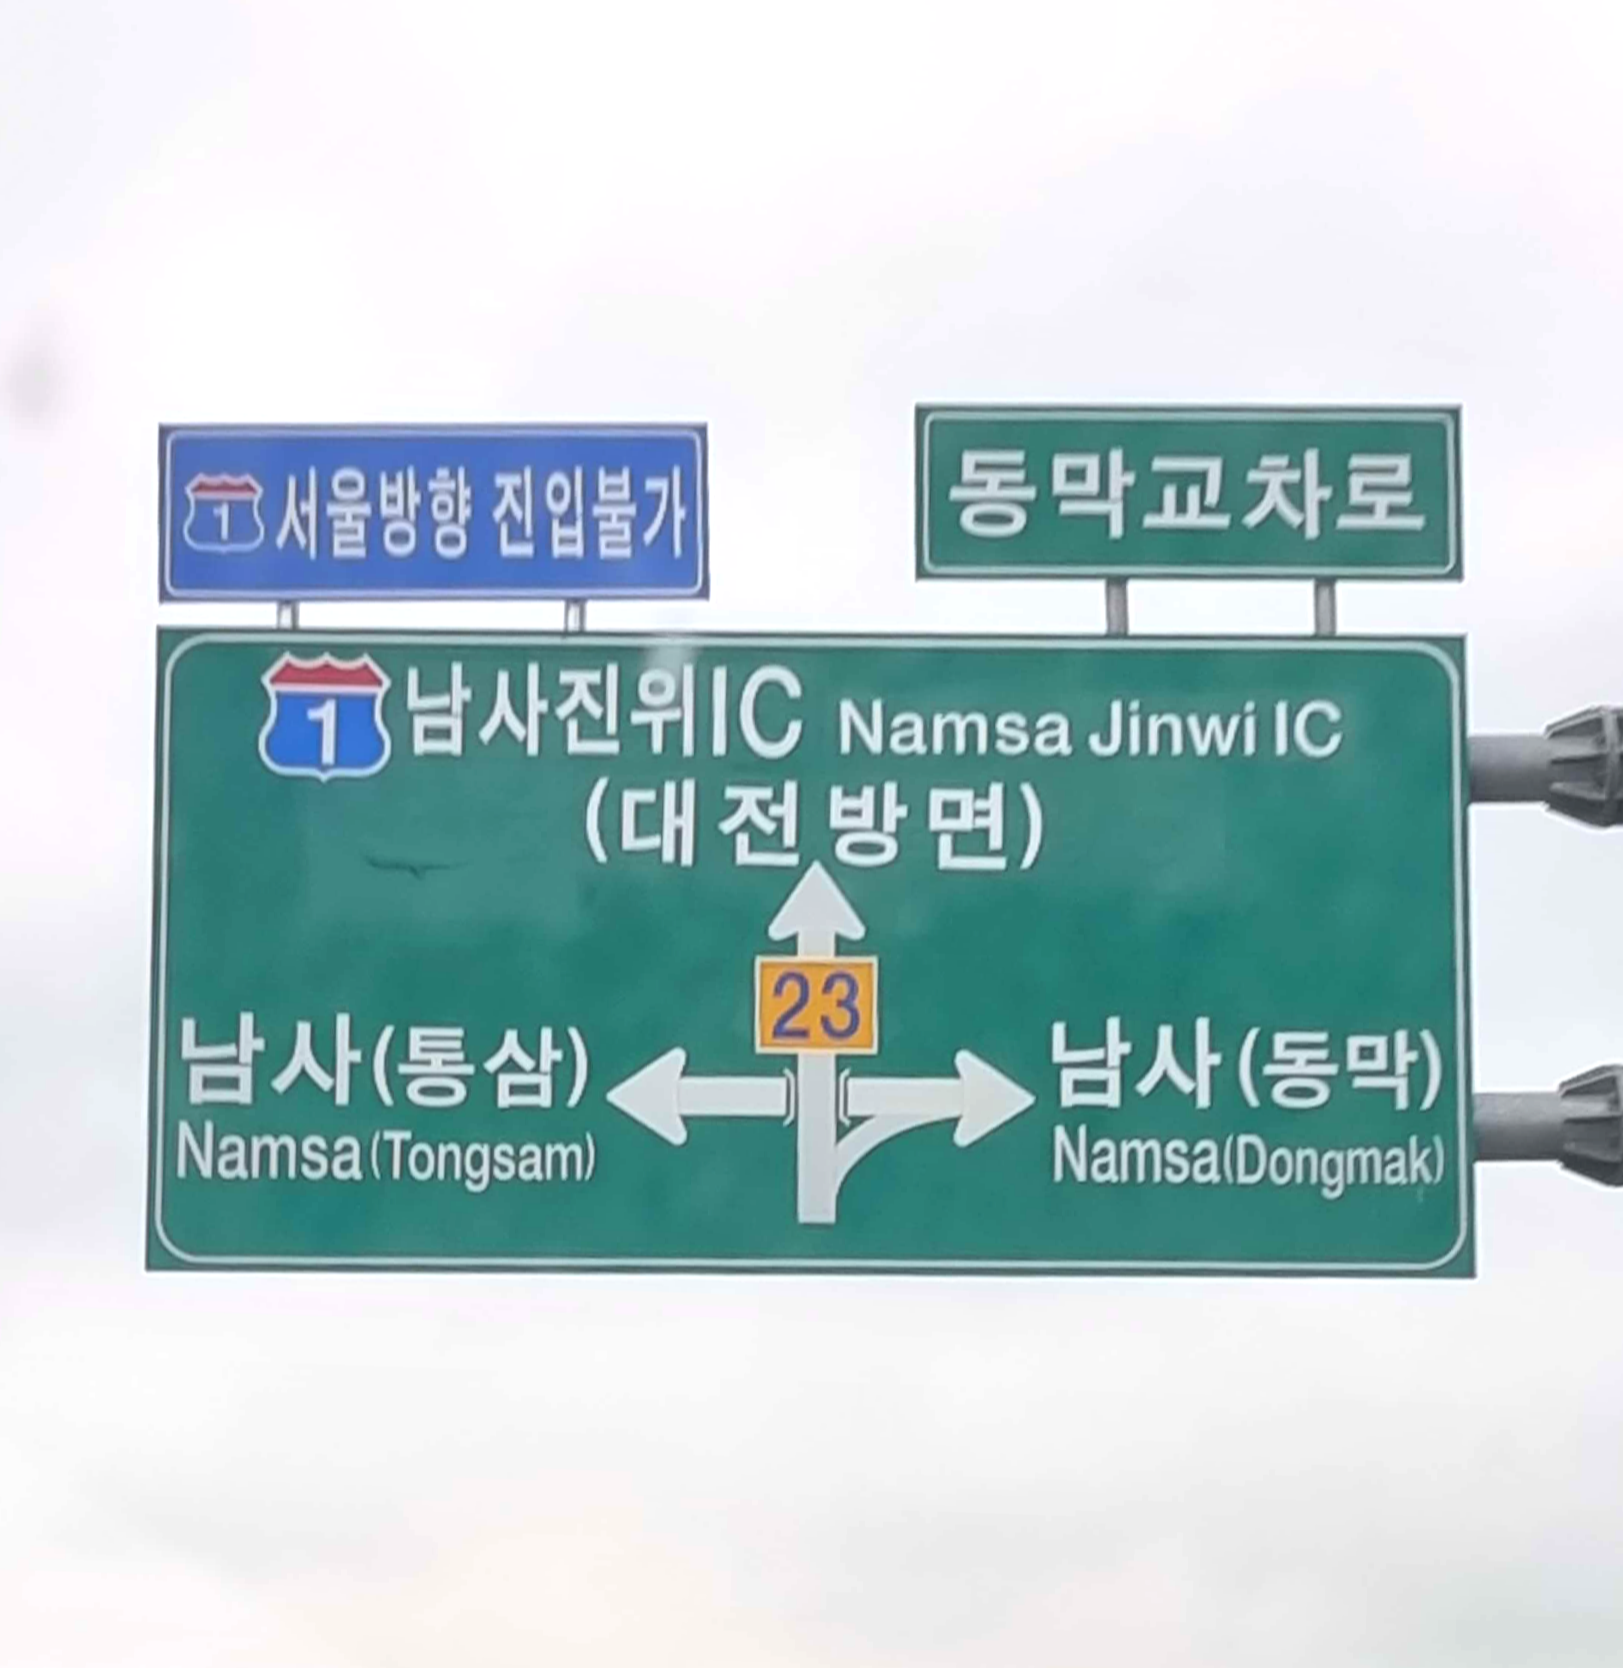 서울방향 진입불가 표지판